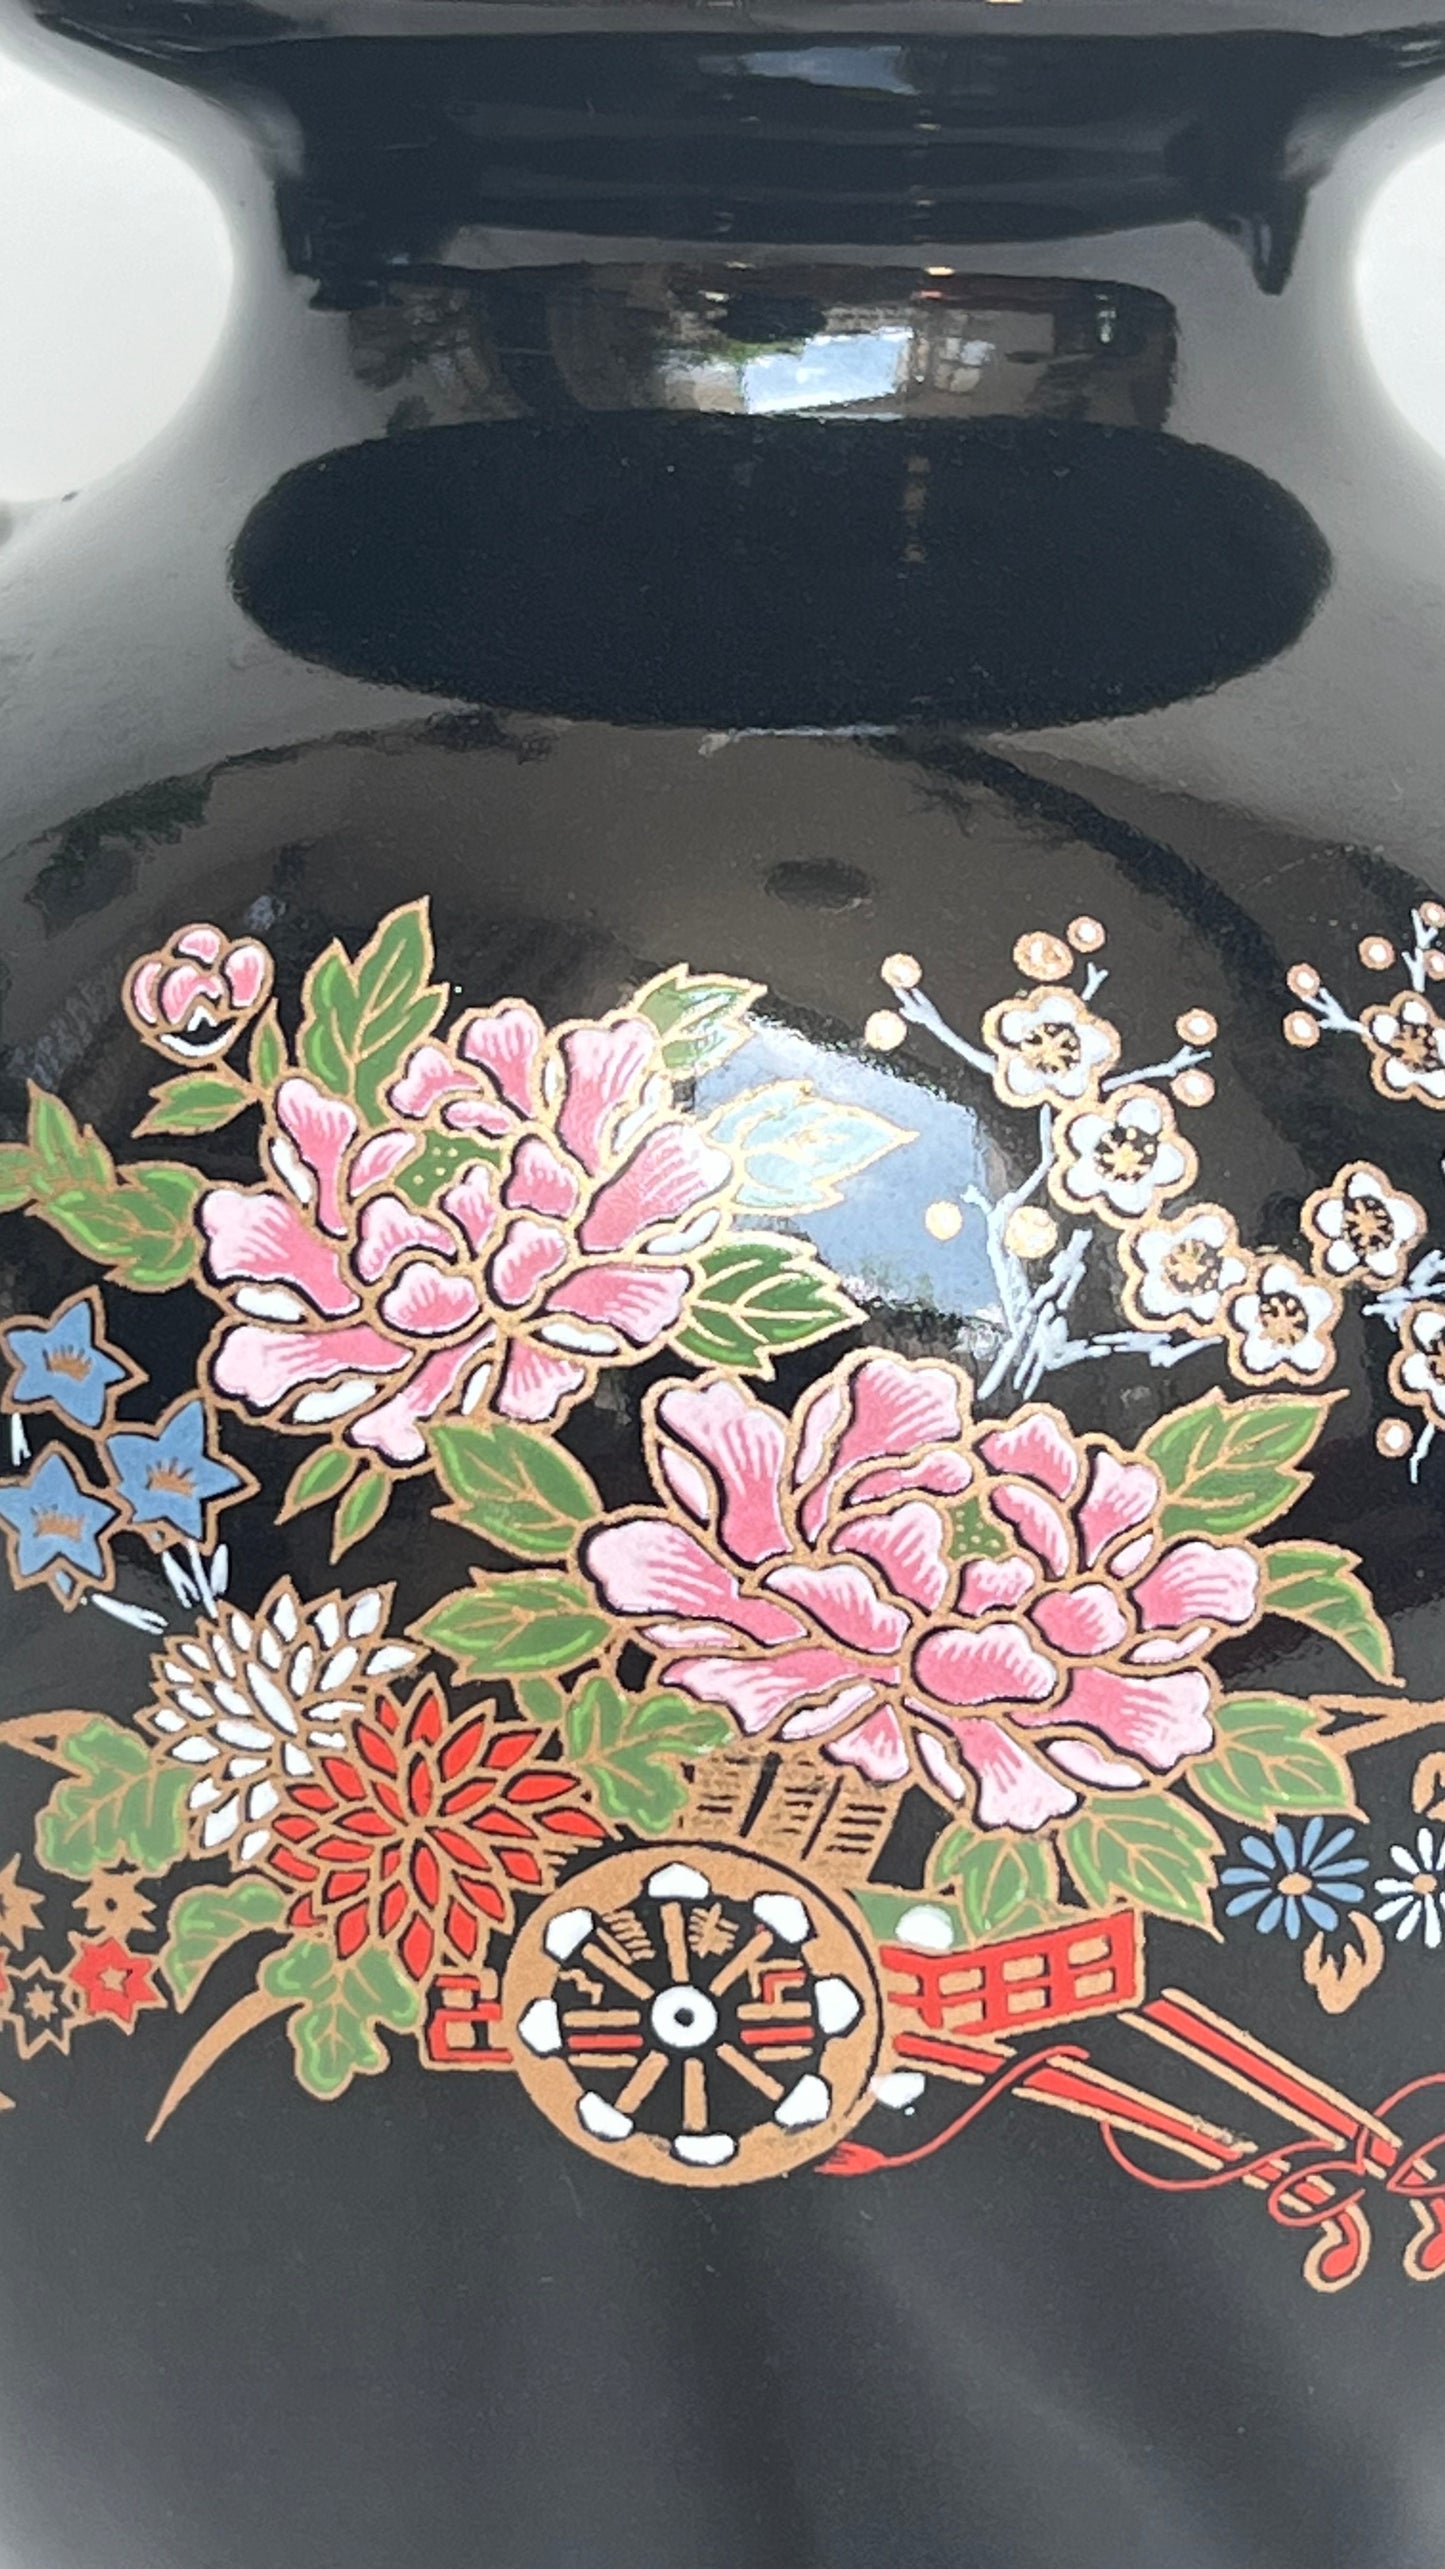 Two Taiwanese vases | שני אגרטלים טיוואנים